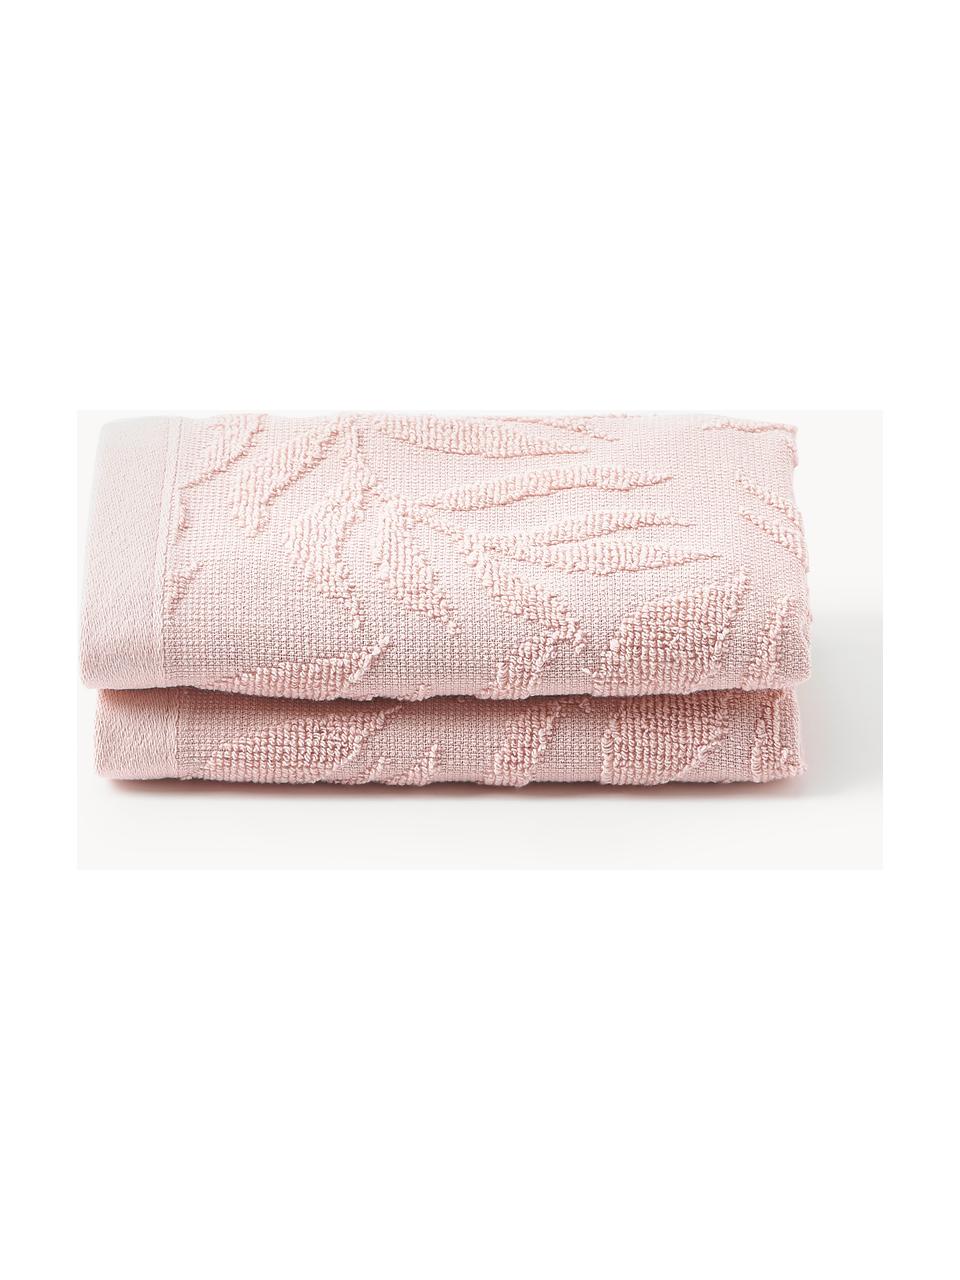 Ręcznik Leaf, różne rozmiary, Jasny różowy, Ręcznik, S 50 x D 100 cm, 2 szt.